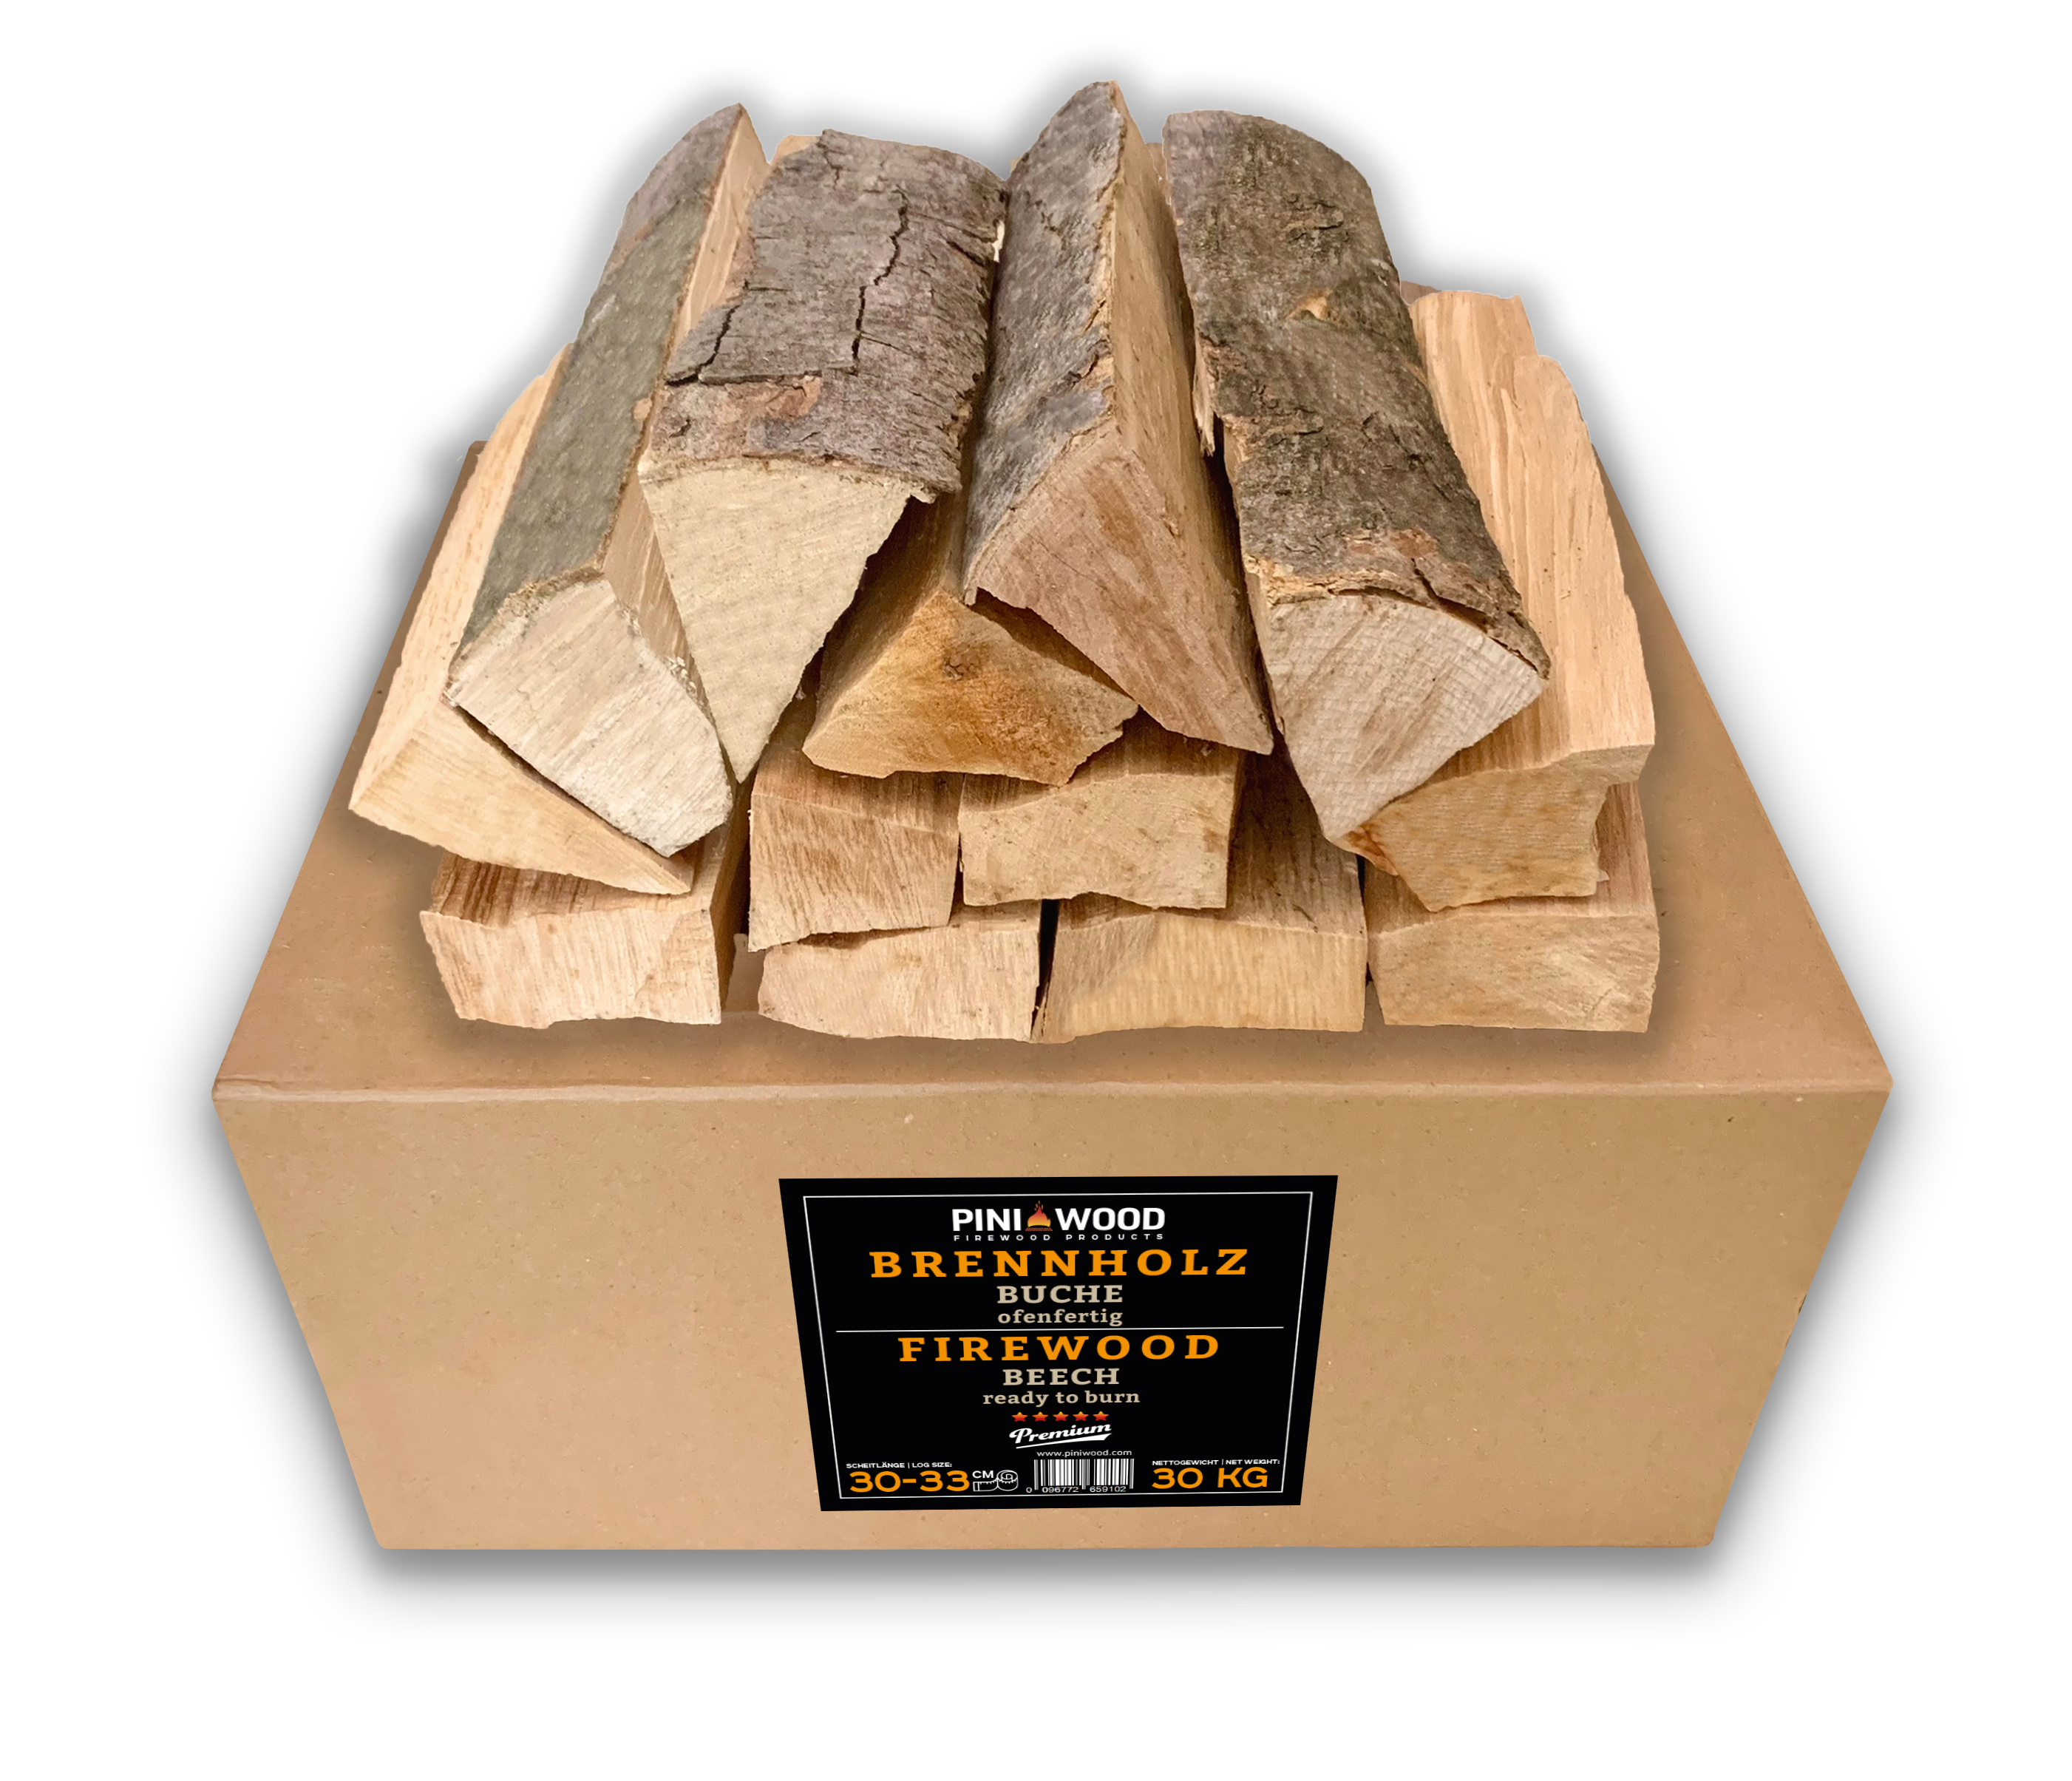 30 Kg Brennholz Buche 30-33 cm ofenfertig für Kamin Grill Feuerschale Ofen